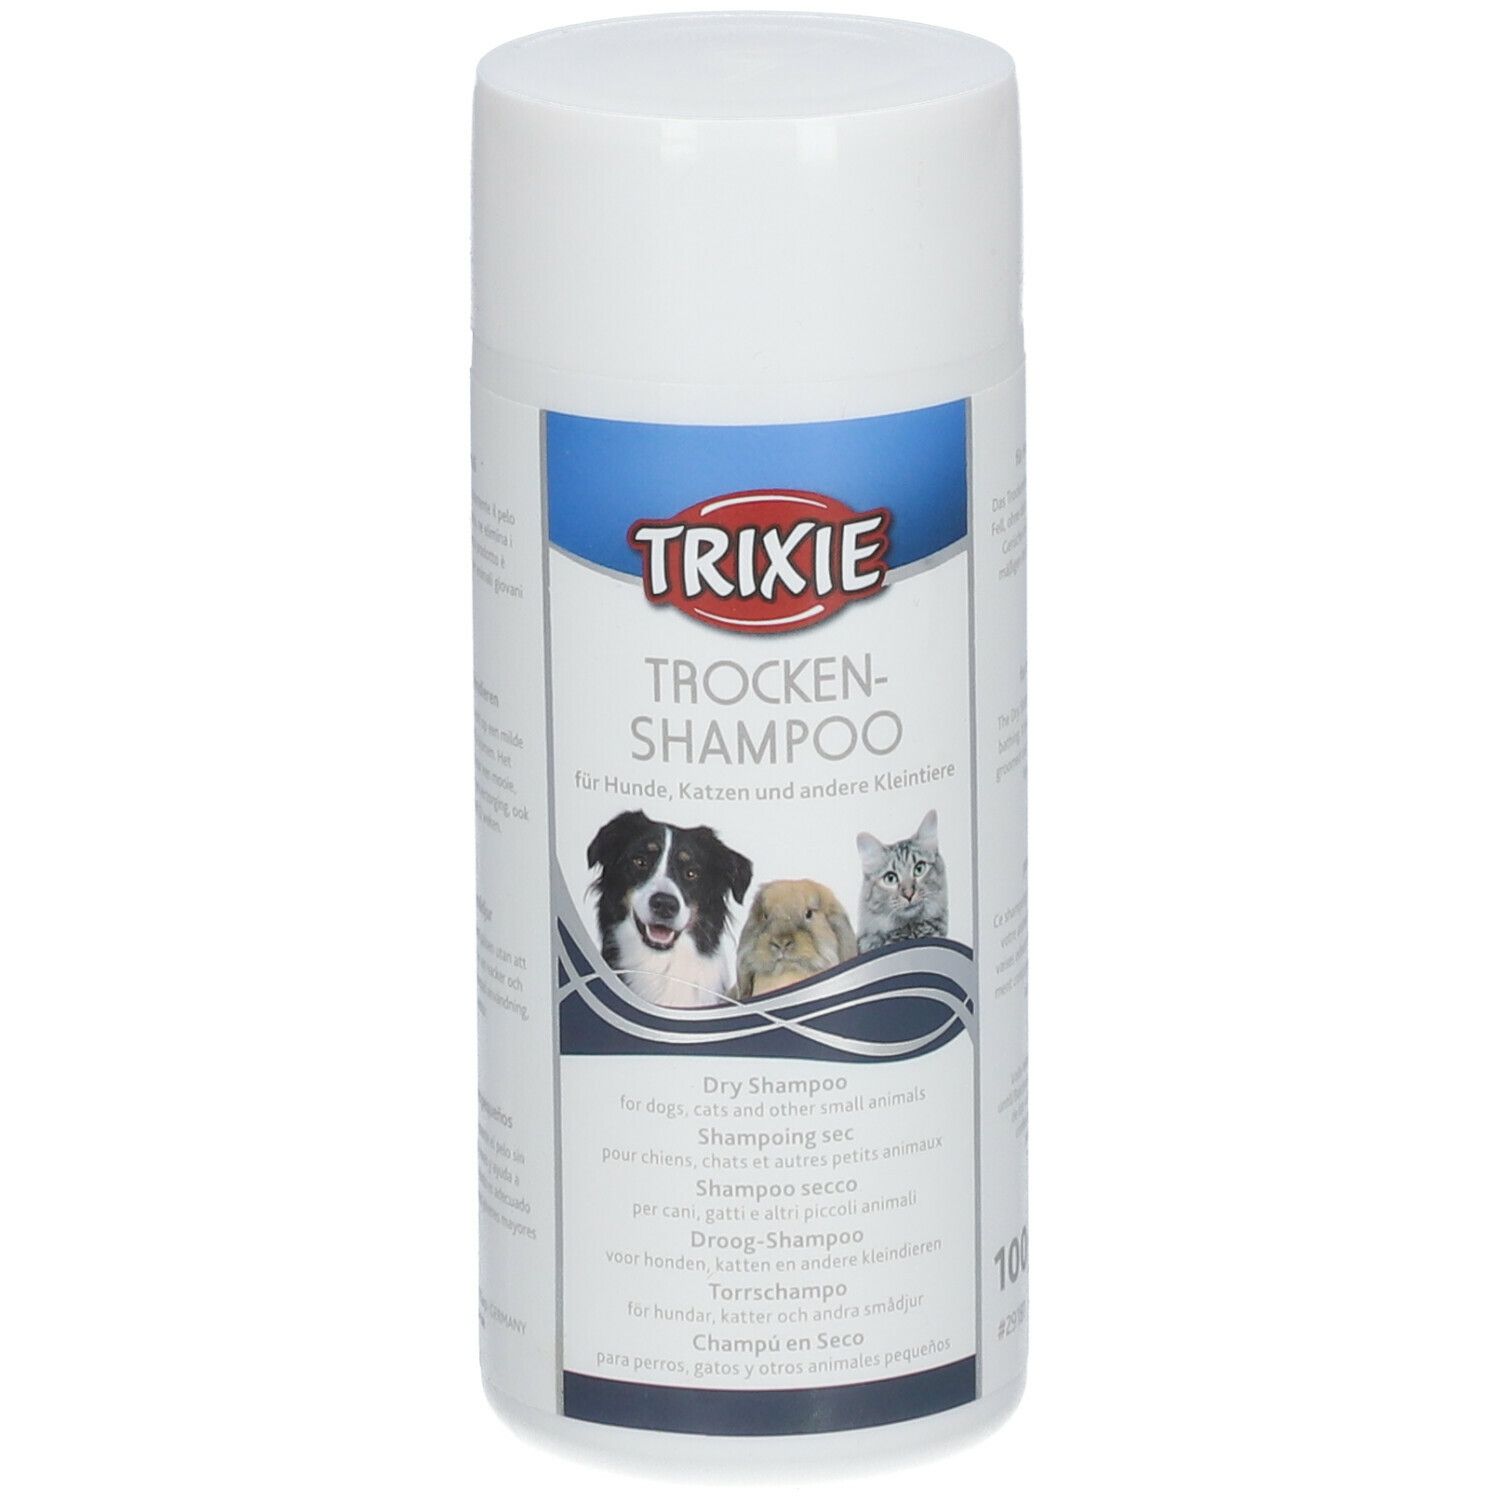 Image of TRIXIE Shampoo shampoo secco per cani, gatti e piccoli animali.